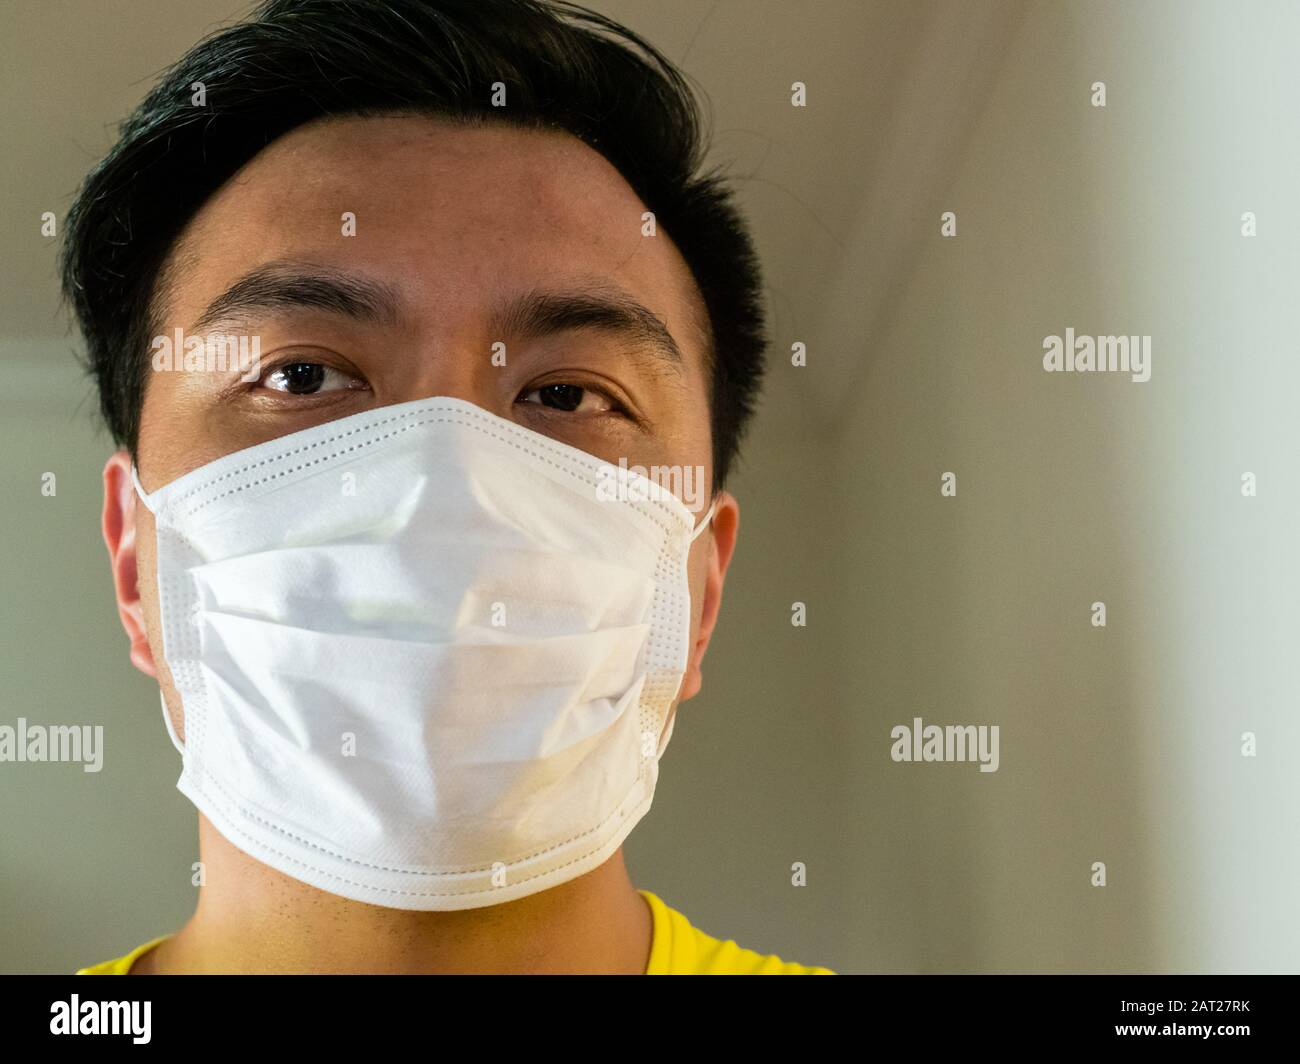 Primo piano testa di asiatico cinese uomo / persona che indossa una maschera chirurgica viso come protezione contro la trasmissione / infezione di virus contagiosi con Foto Stock